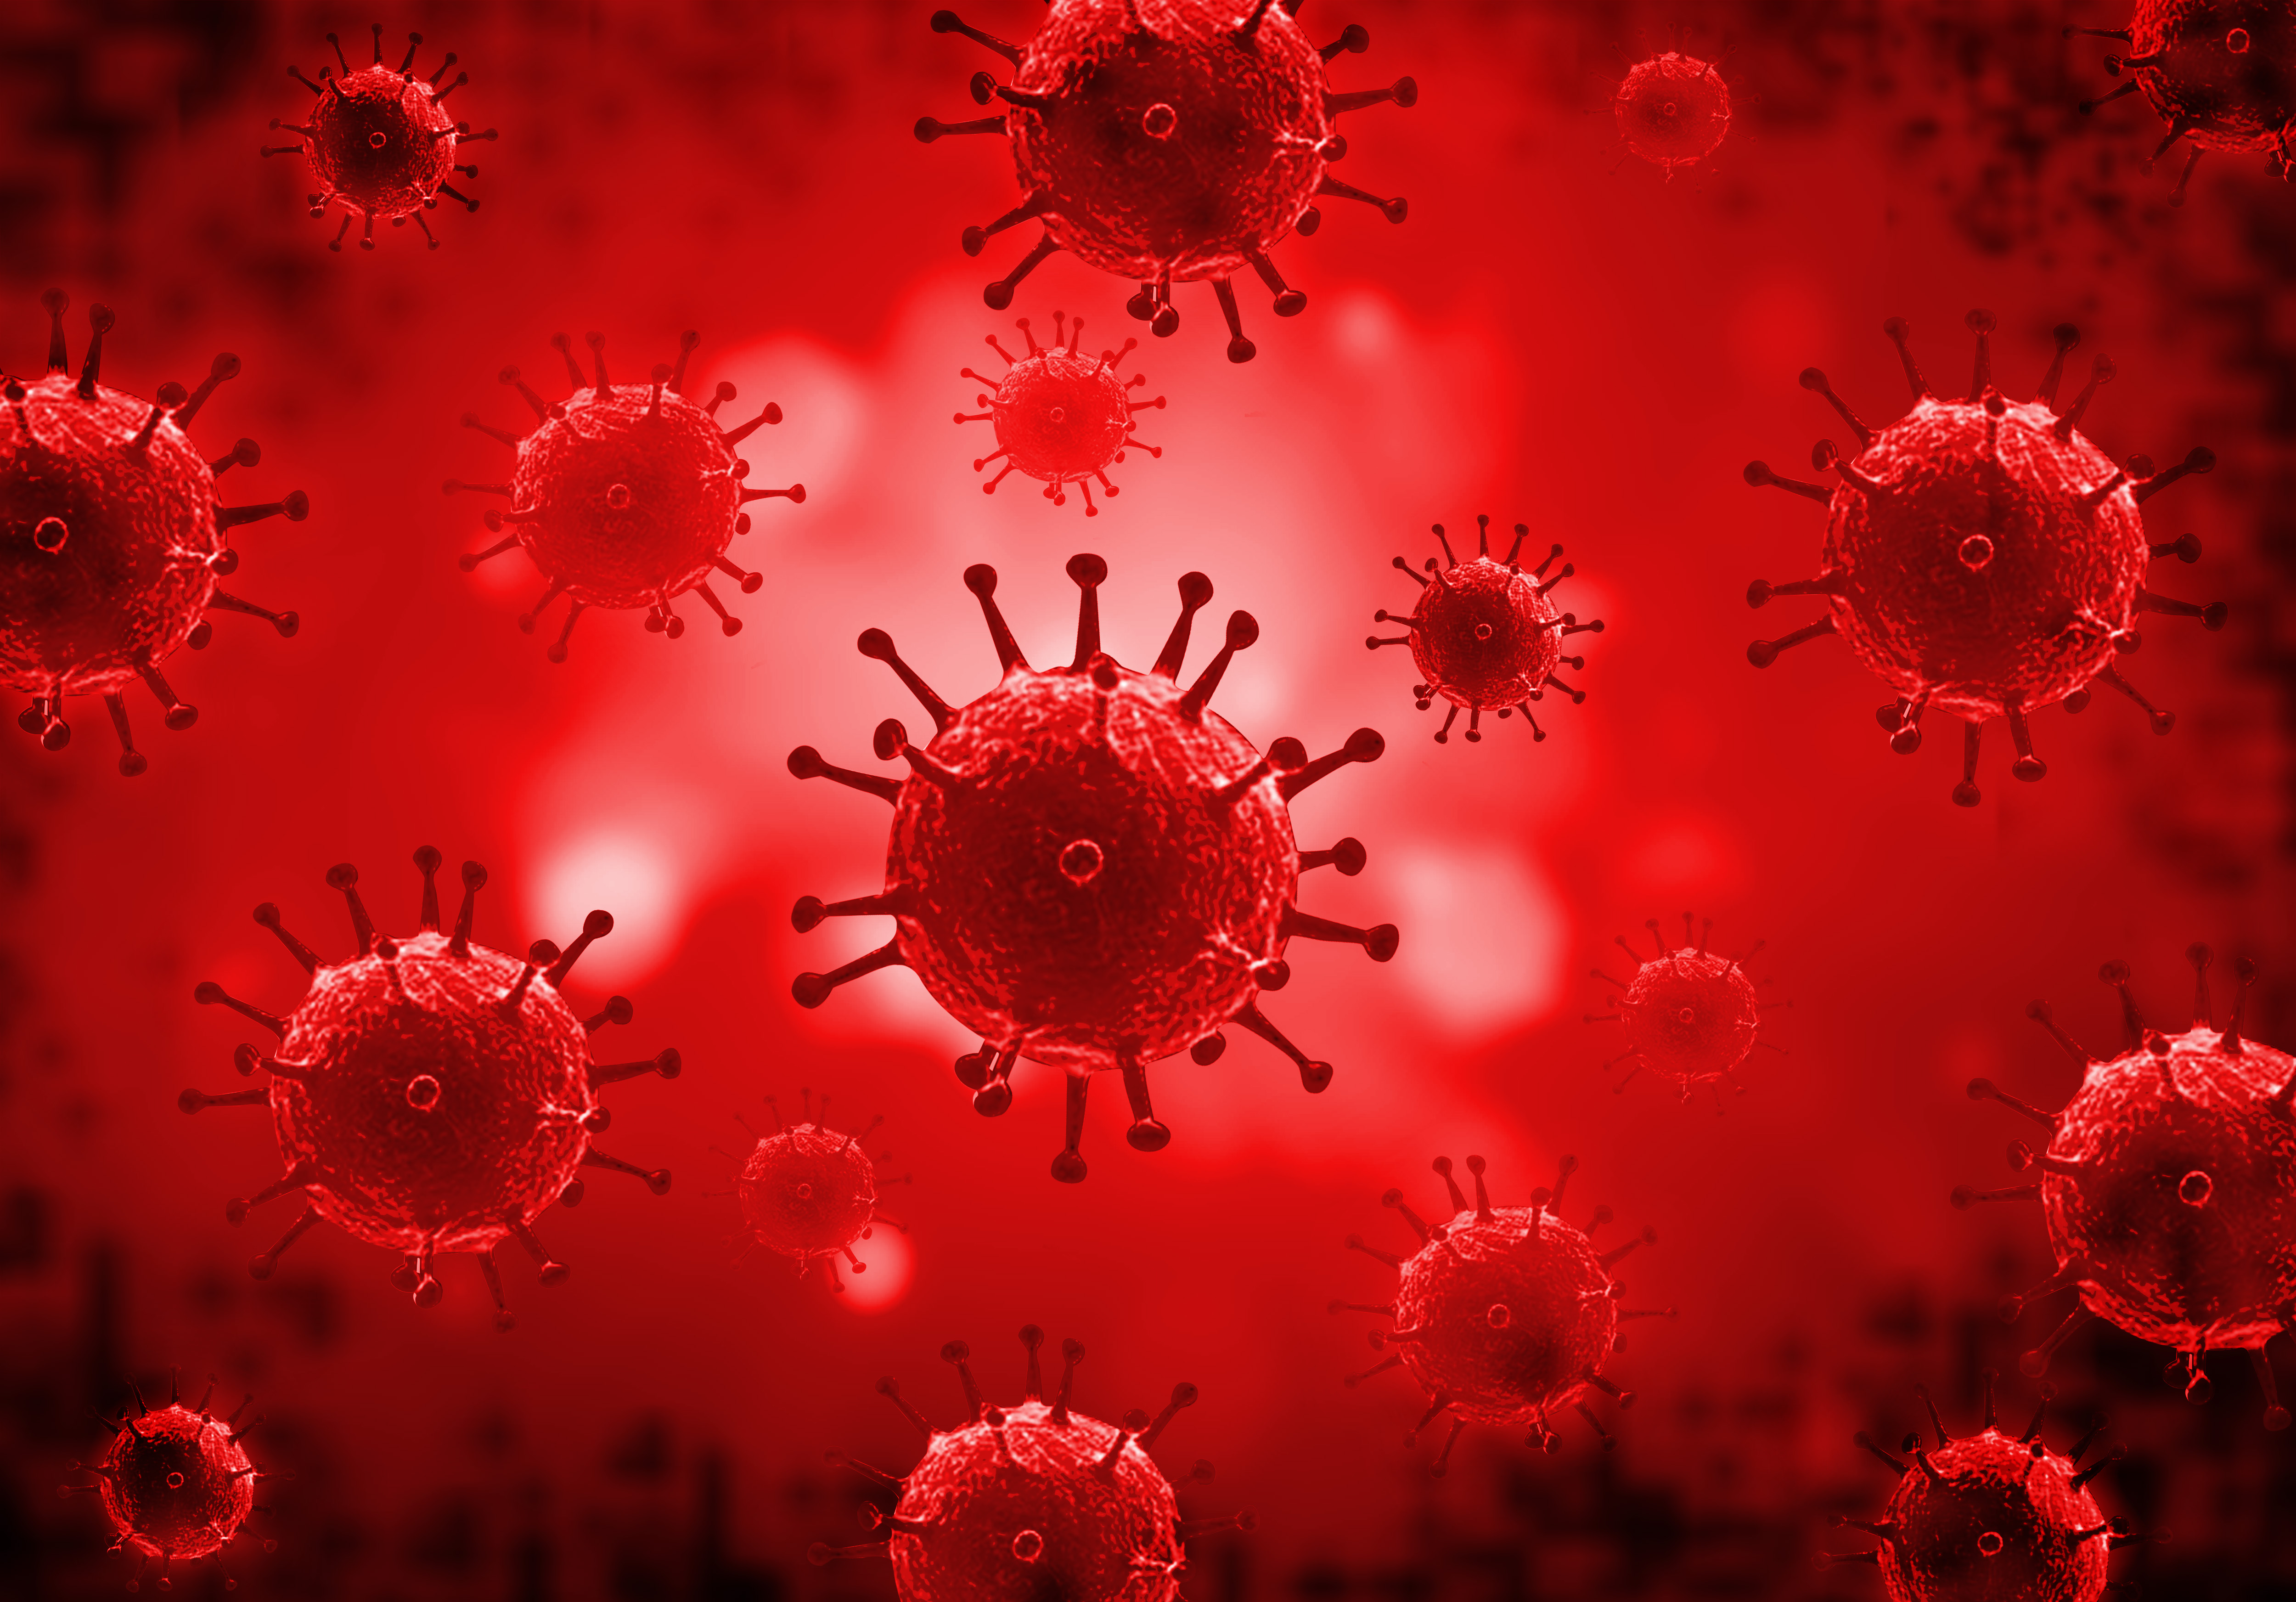 Картинки про вируса. Вирус вирус коронавирус. Коронавирус вирус бактерии. Микробы ковид 19. Коронавирус молекула.